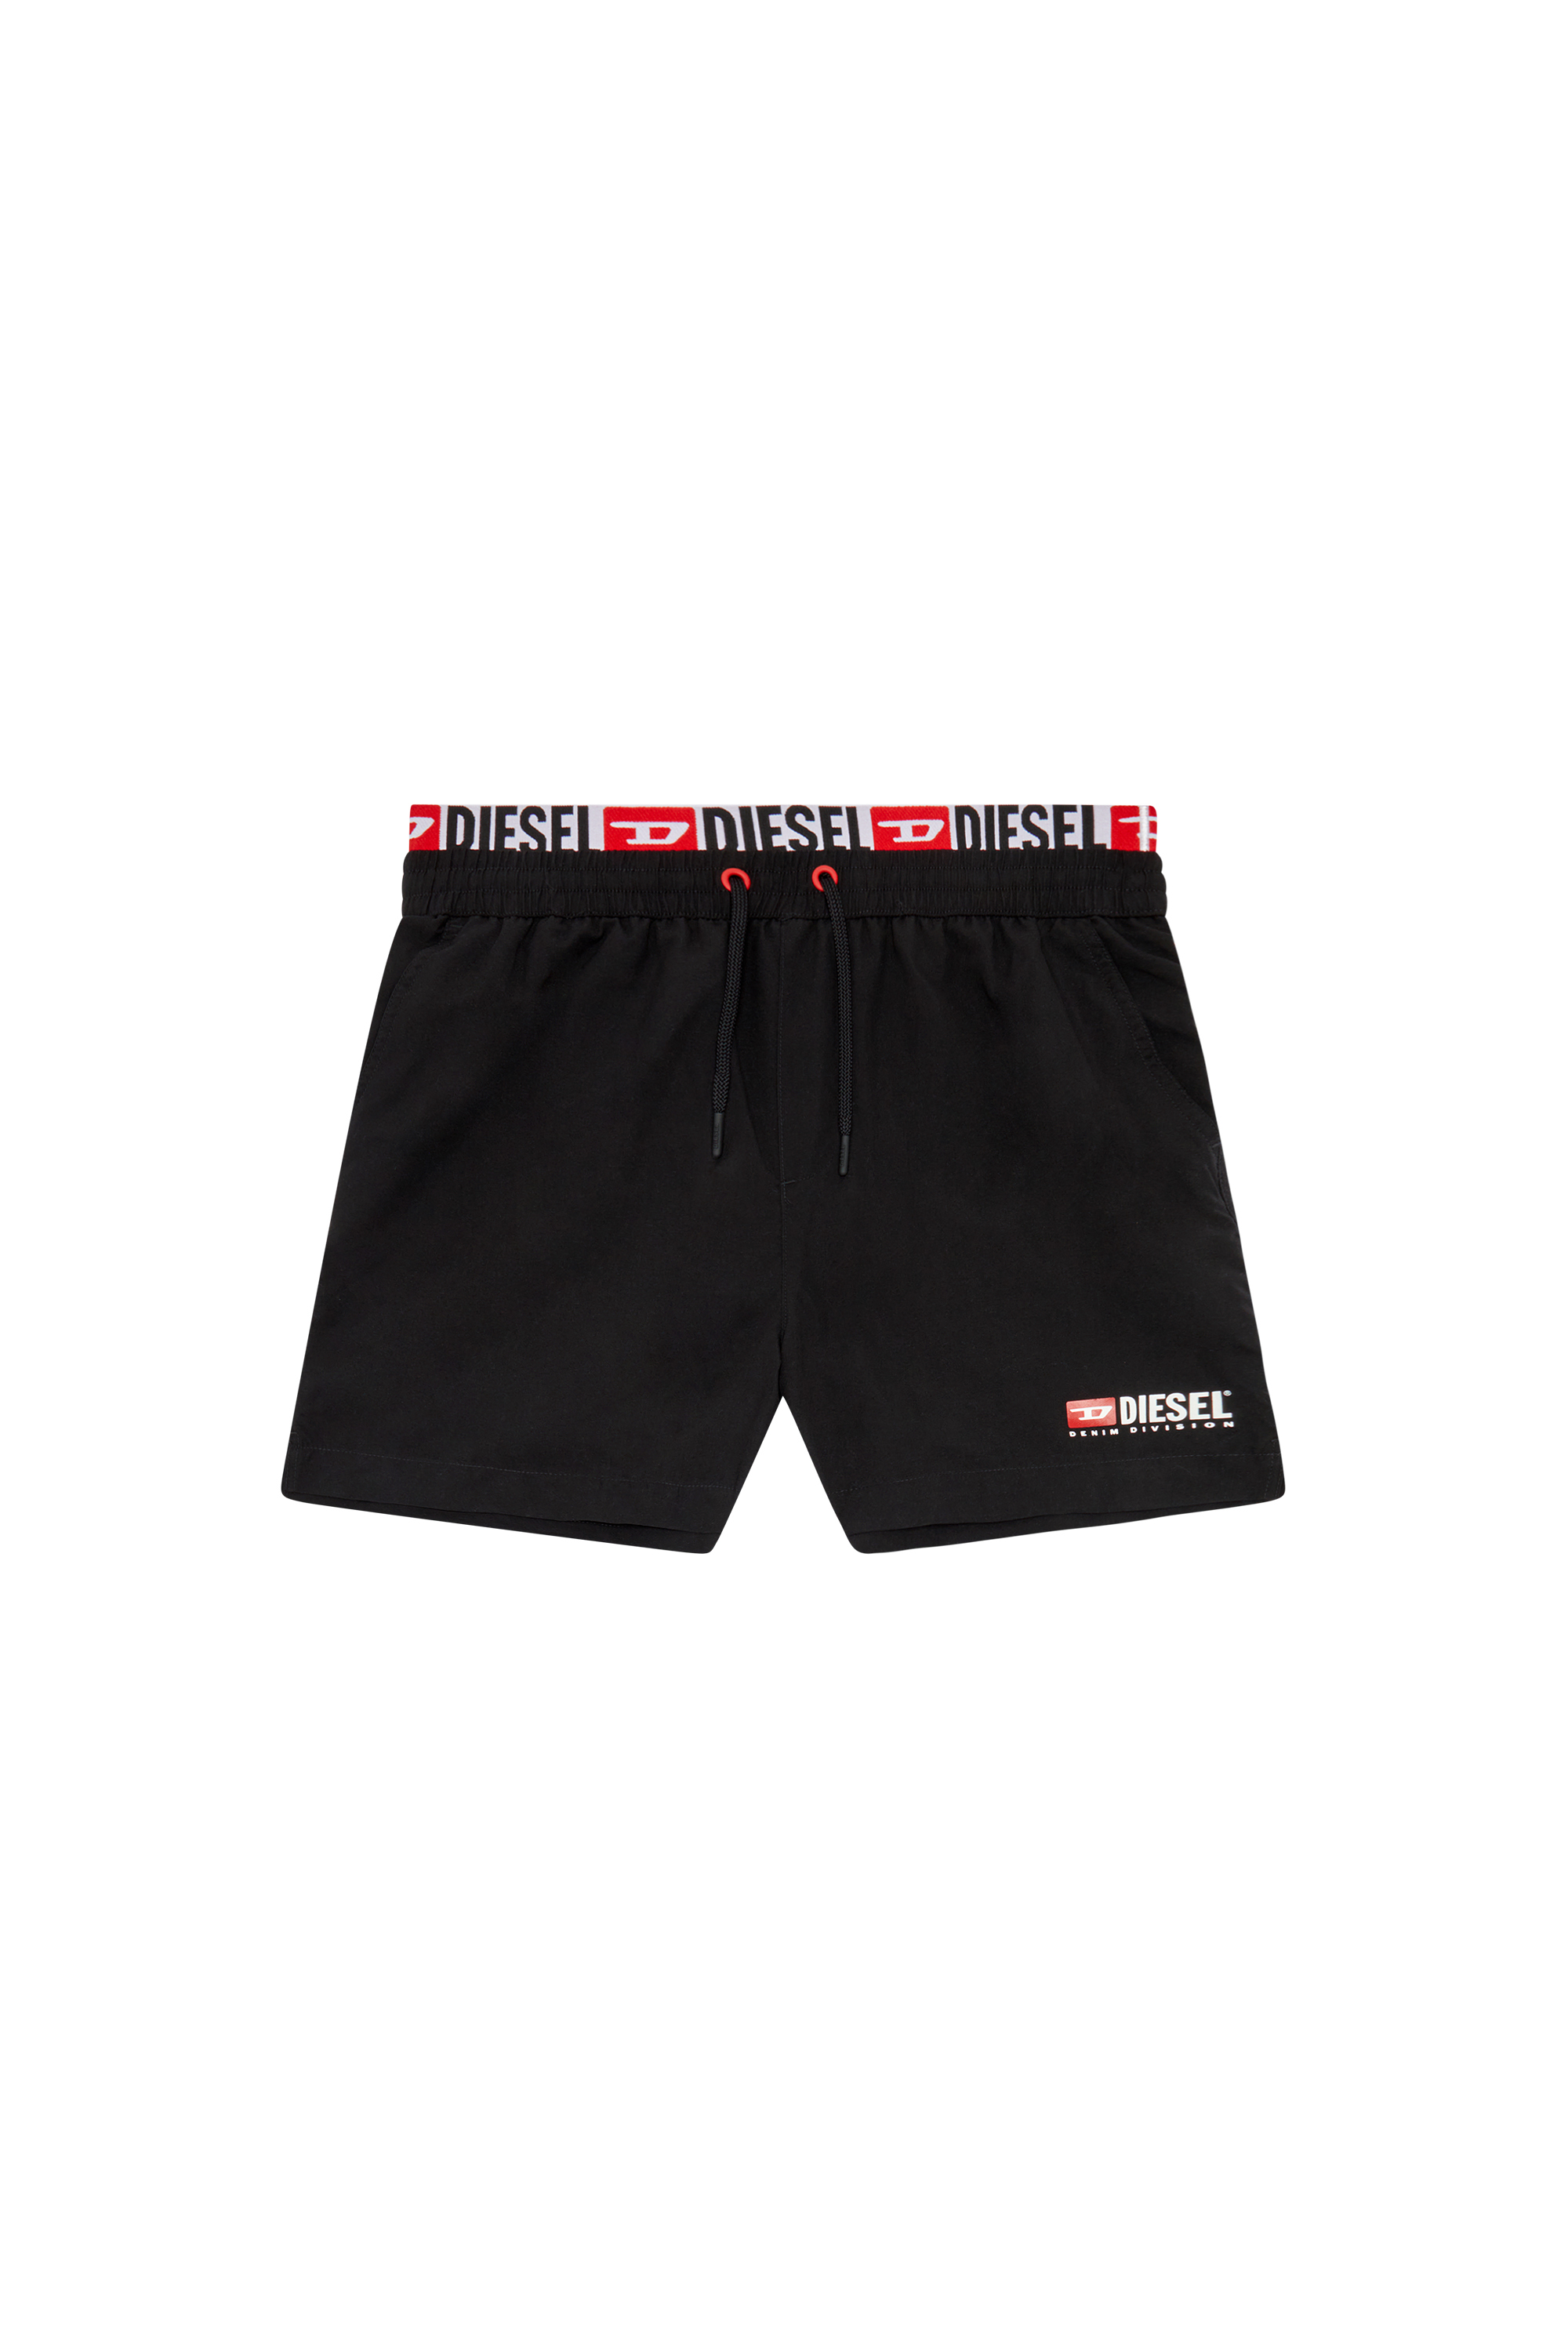 Diesel - BMBX-VISPER-41, Man Double-waist board shorts in Black - Image 4